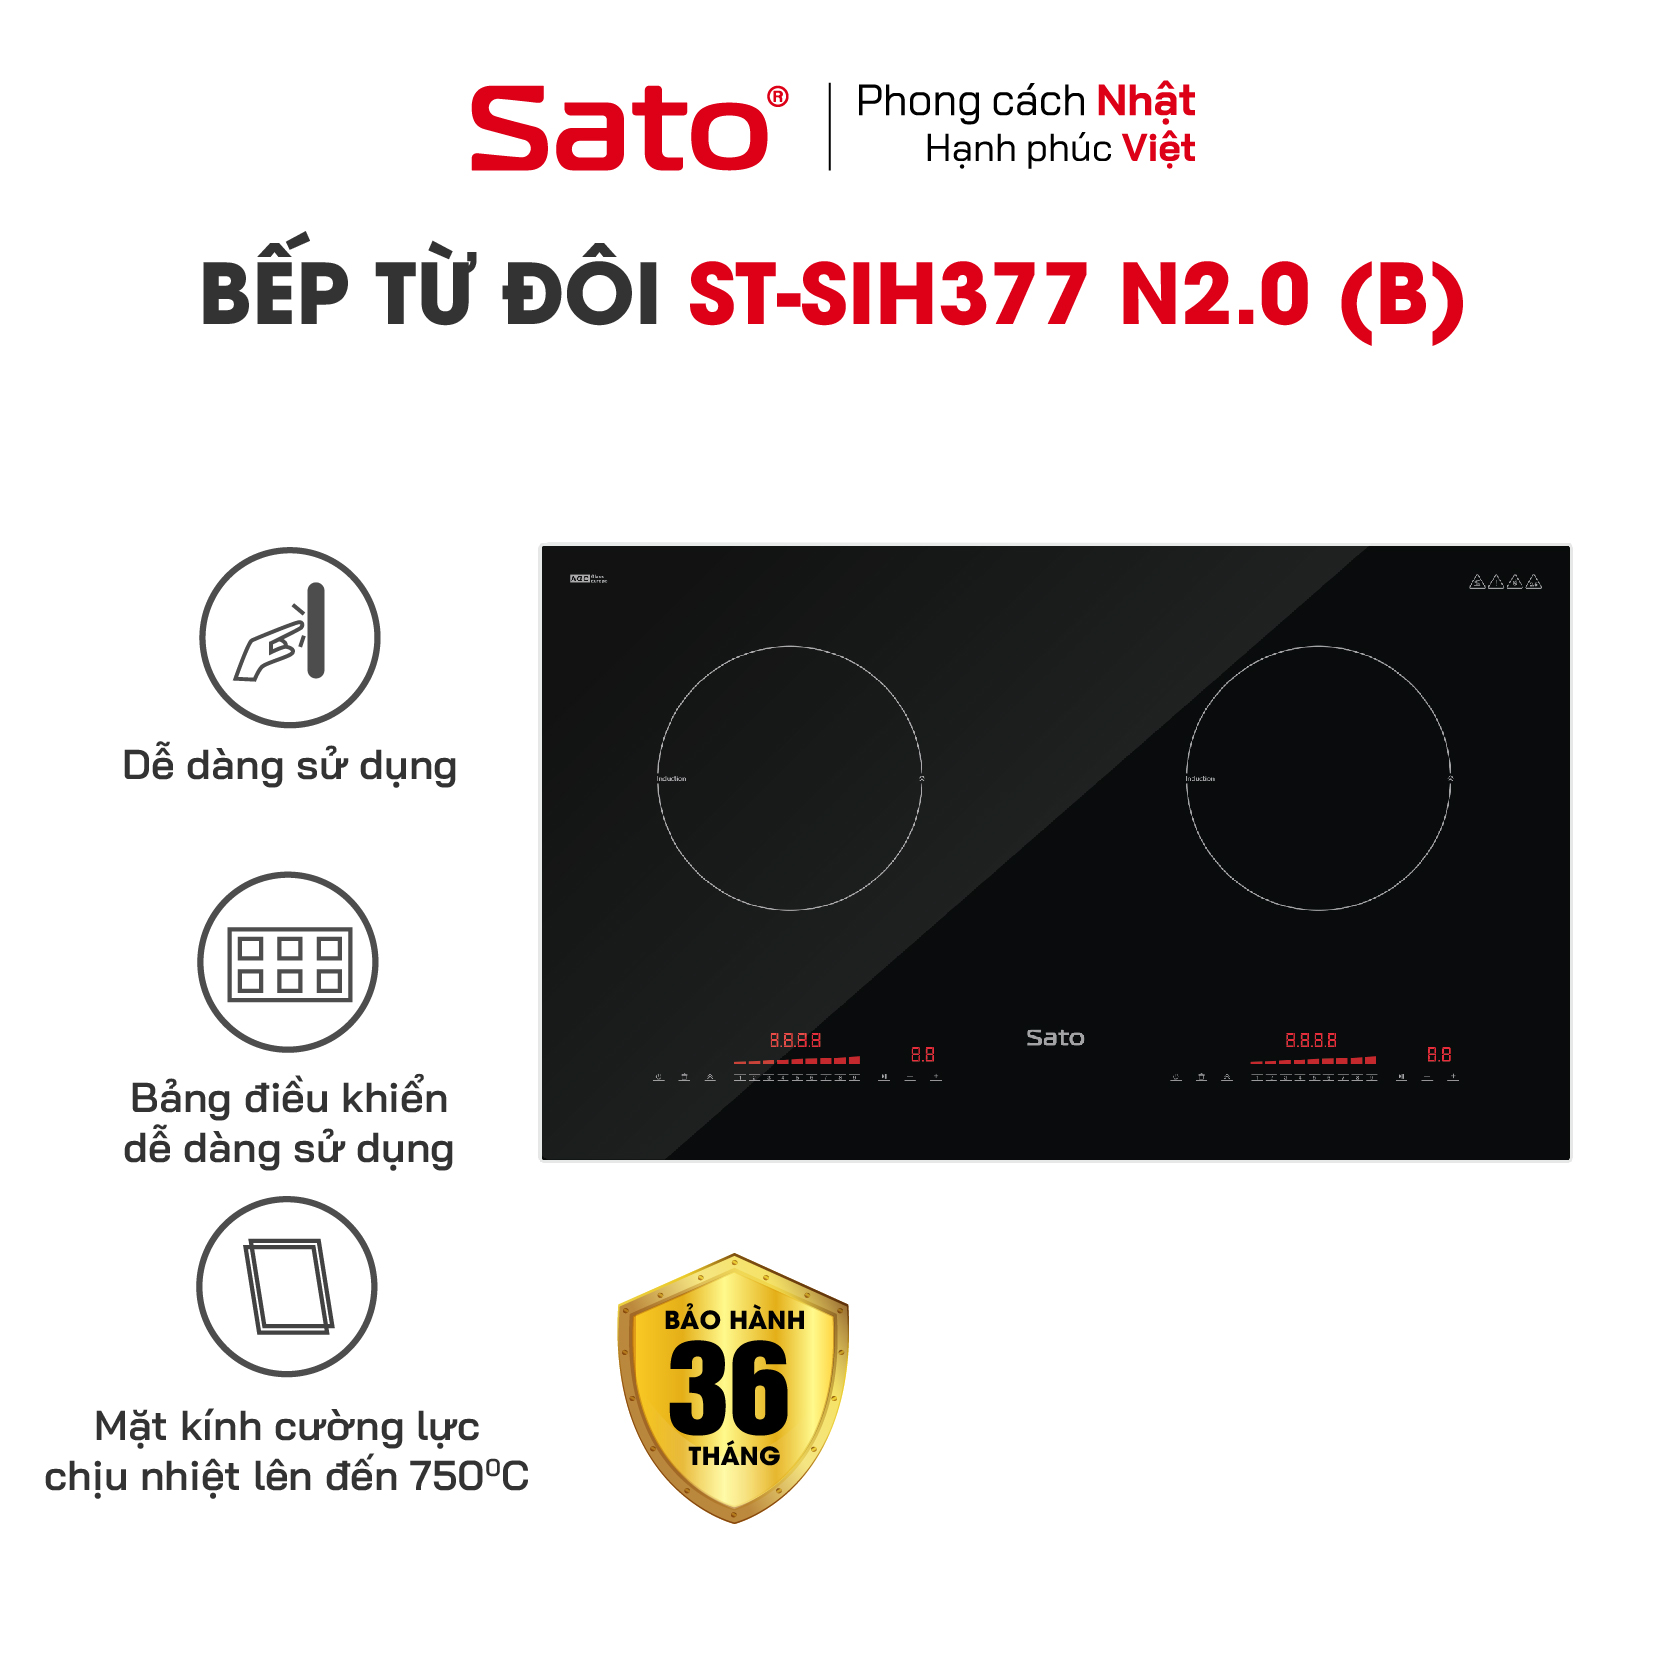 Bếp điện từ thông minh Sato SIH377 N2.0 (B) - Mâm điện từ dùng 100% dây đồng tạo hiệu suất tối đa, tiết kiệm điện năng (Tặng bộ 3 nồi Inox) - Miễn phí vận chuyển toàn quốc - Hàng chính hãng